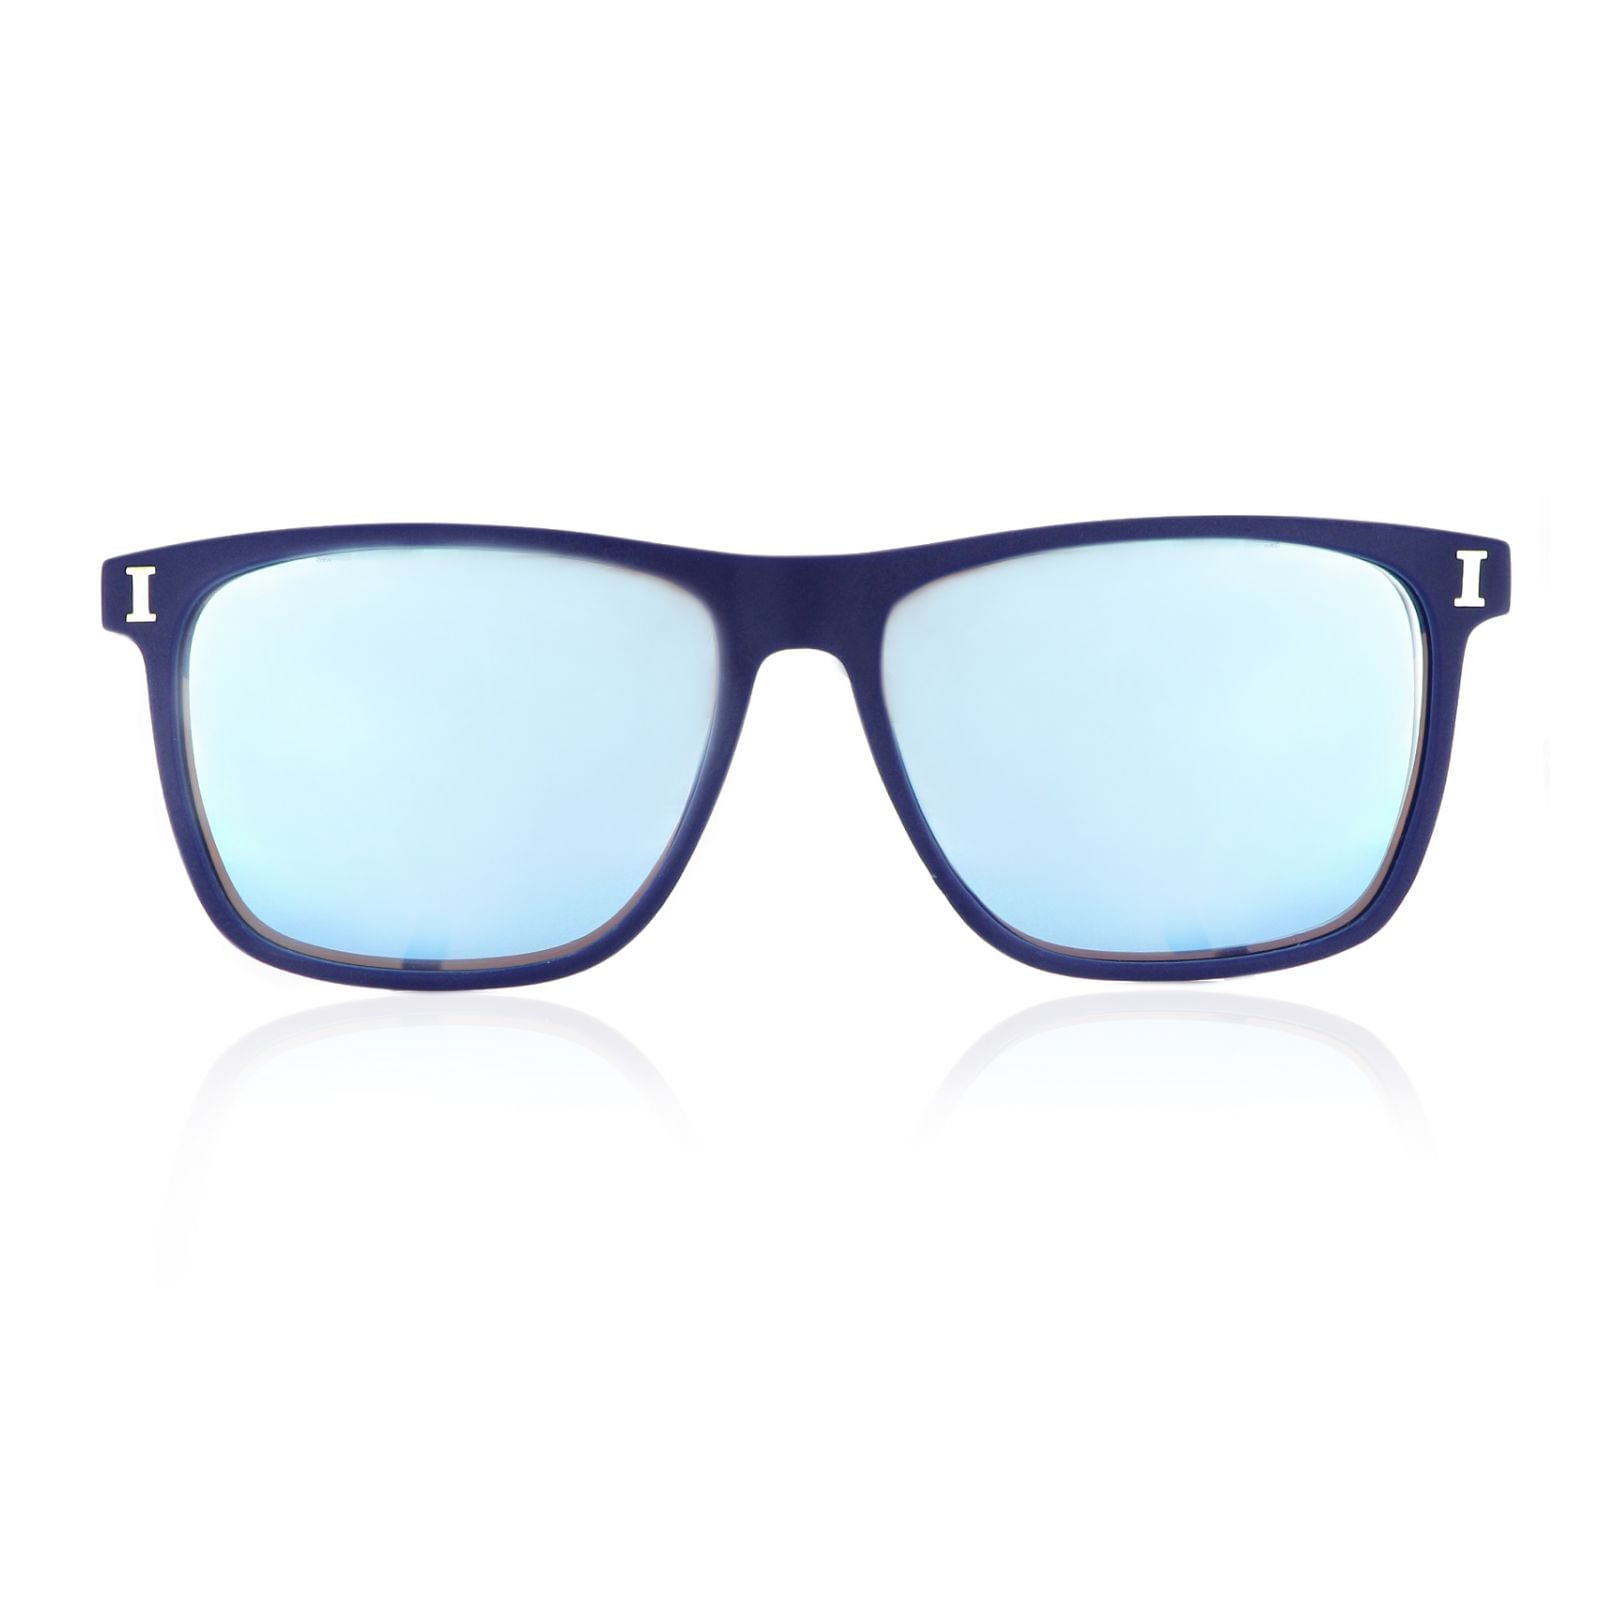 Gafas Invicta Pro Diver Shield C1 Azul Unisex